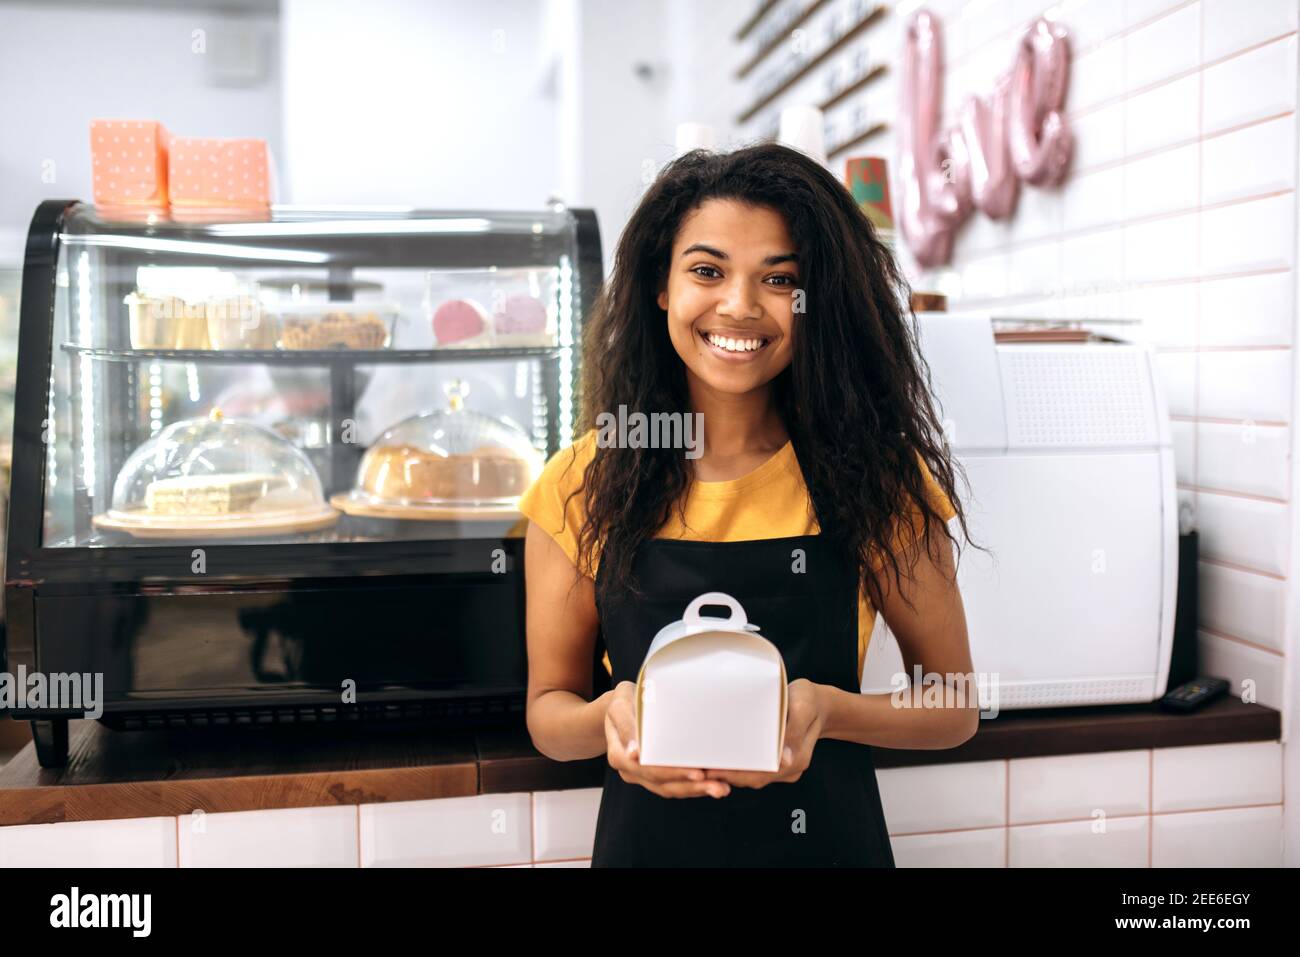 Zufriedene und freundliche multirassische schwarze Mädchen, Kellnerin oder Unternehmer, steht in einem Café, hält einen Karton mit Dessert innen, schaut und lächelt an der Kamera Stockfoto